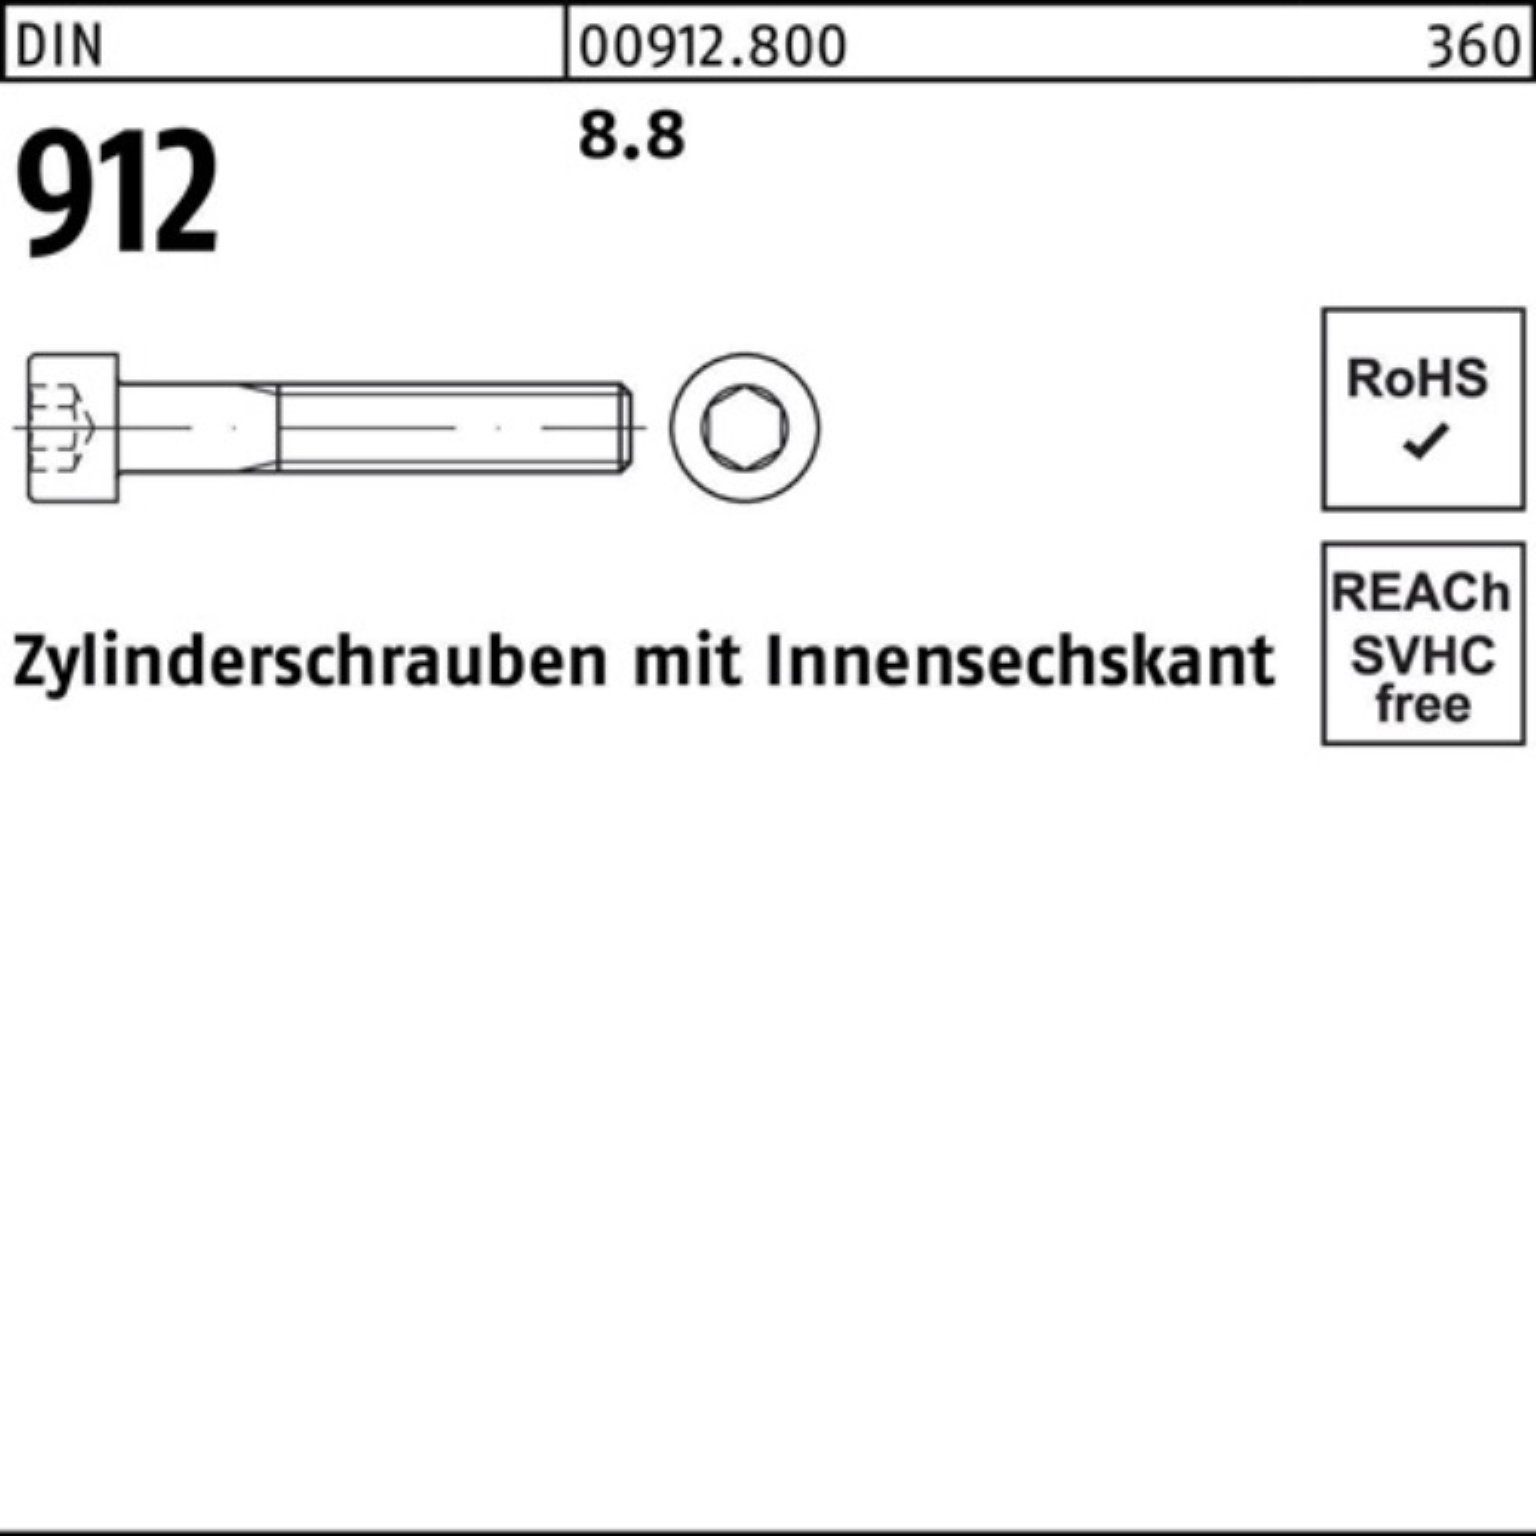 Beliebte Nr. 1 Reyher Zylinderschraube Pack Zylinderschraube DI DIN Stück M24x Innen-6kt 912 8.8 300 100er 1